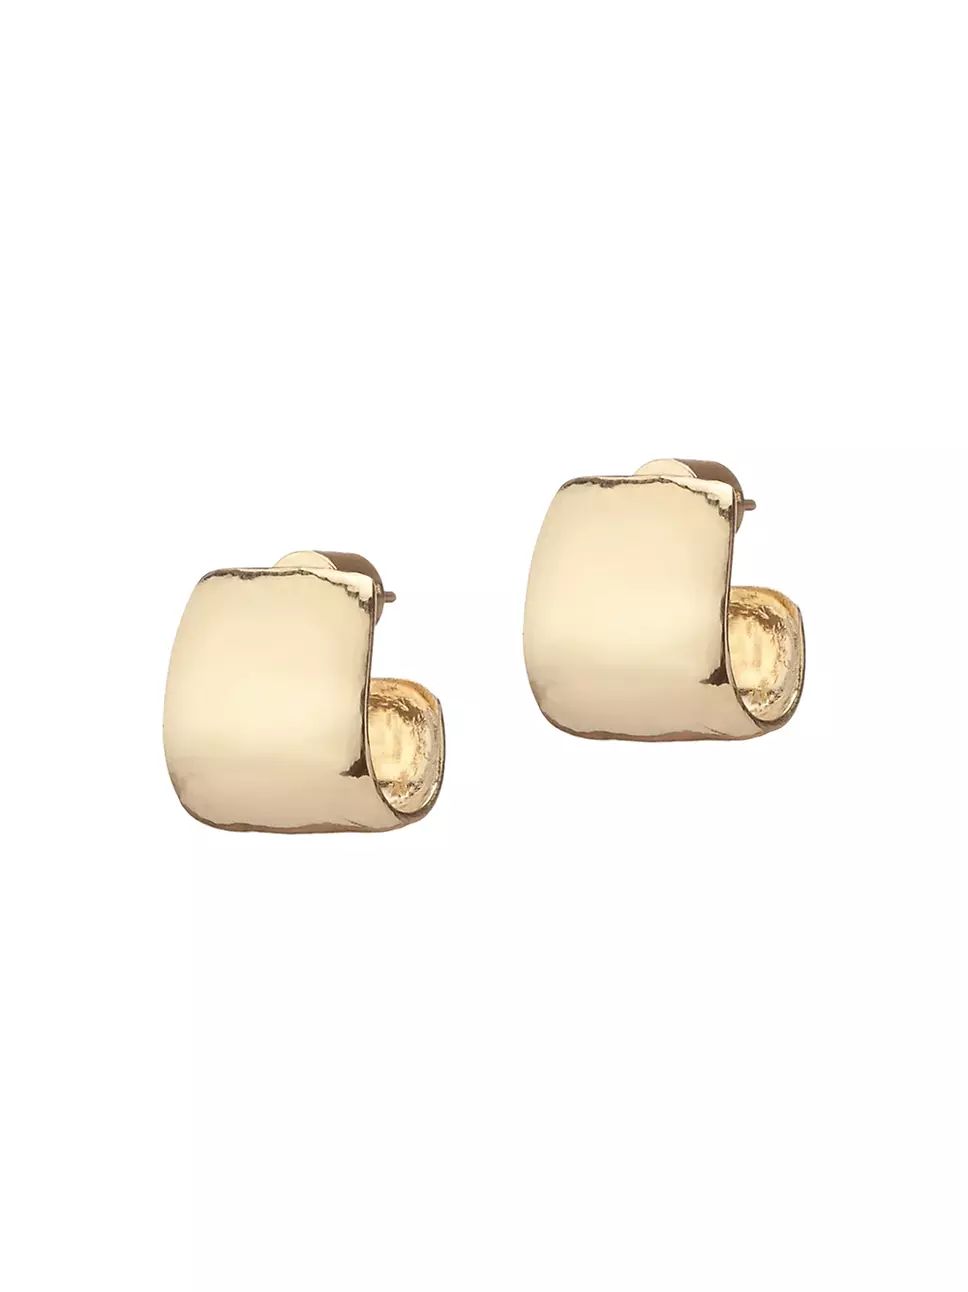 Jennifer Fisher Bolden 10K Gold-Plated Huggie Hoop Earrings | Saks Fifth Avenue